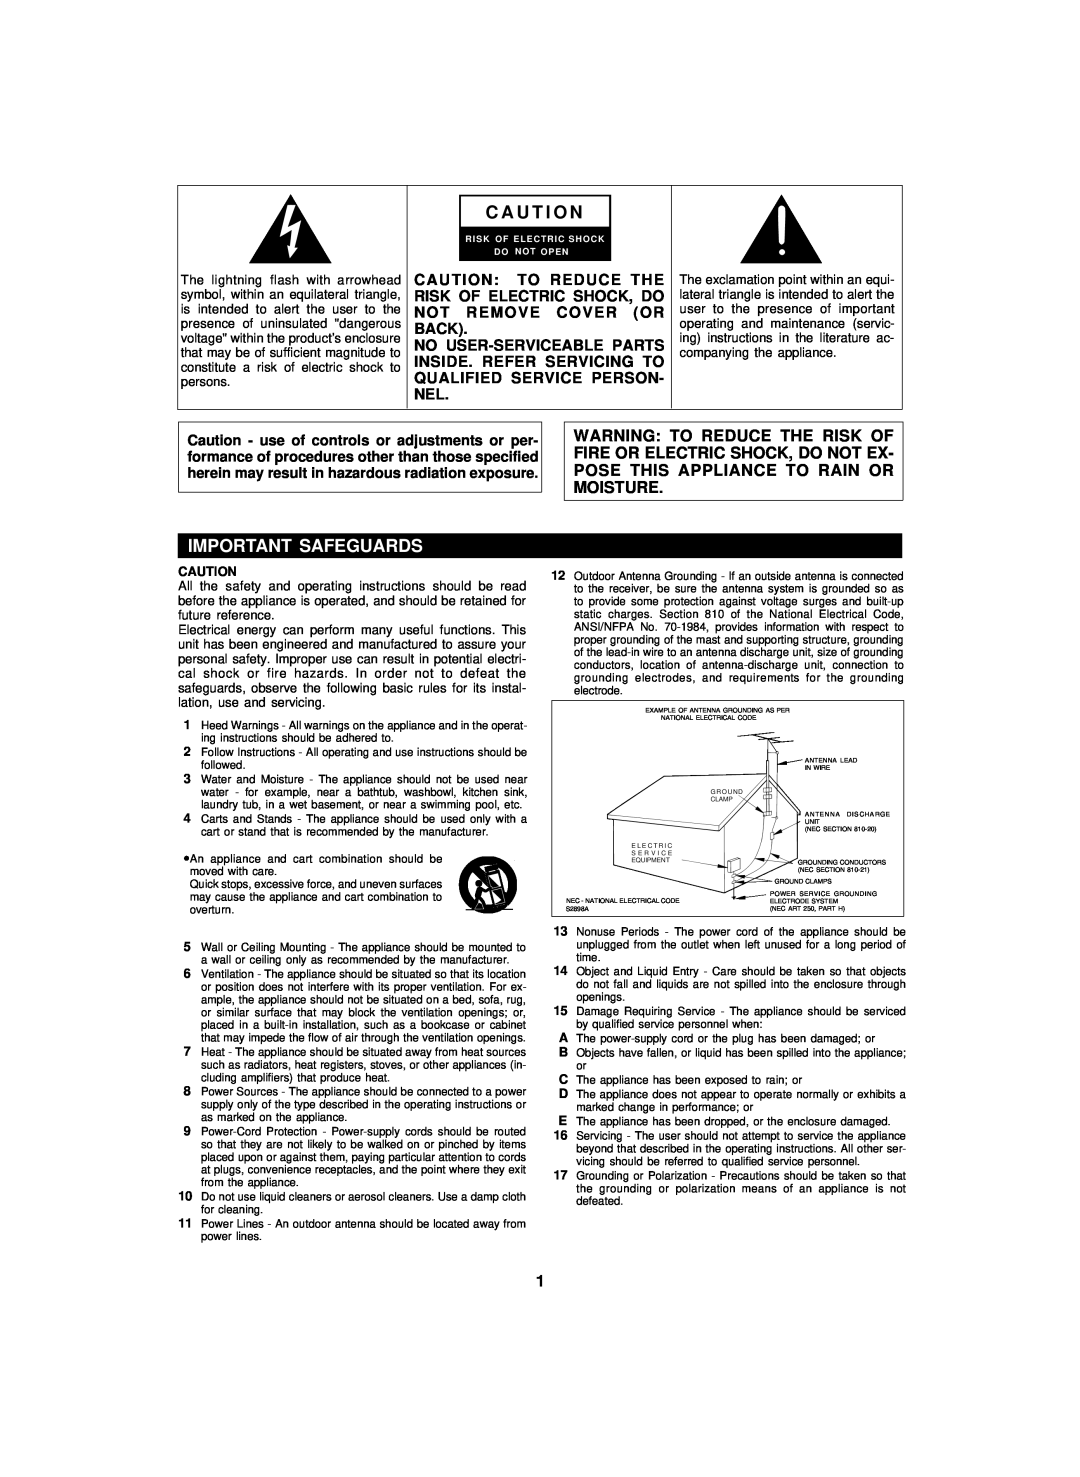 Sharp CDPC3500 operation manual C A U T I O N, Important Safeguards 